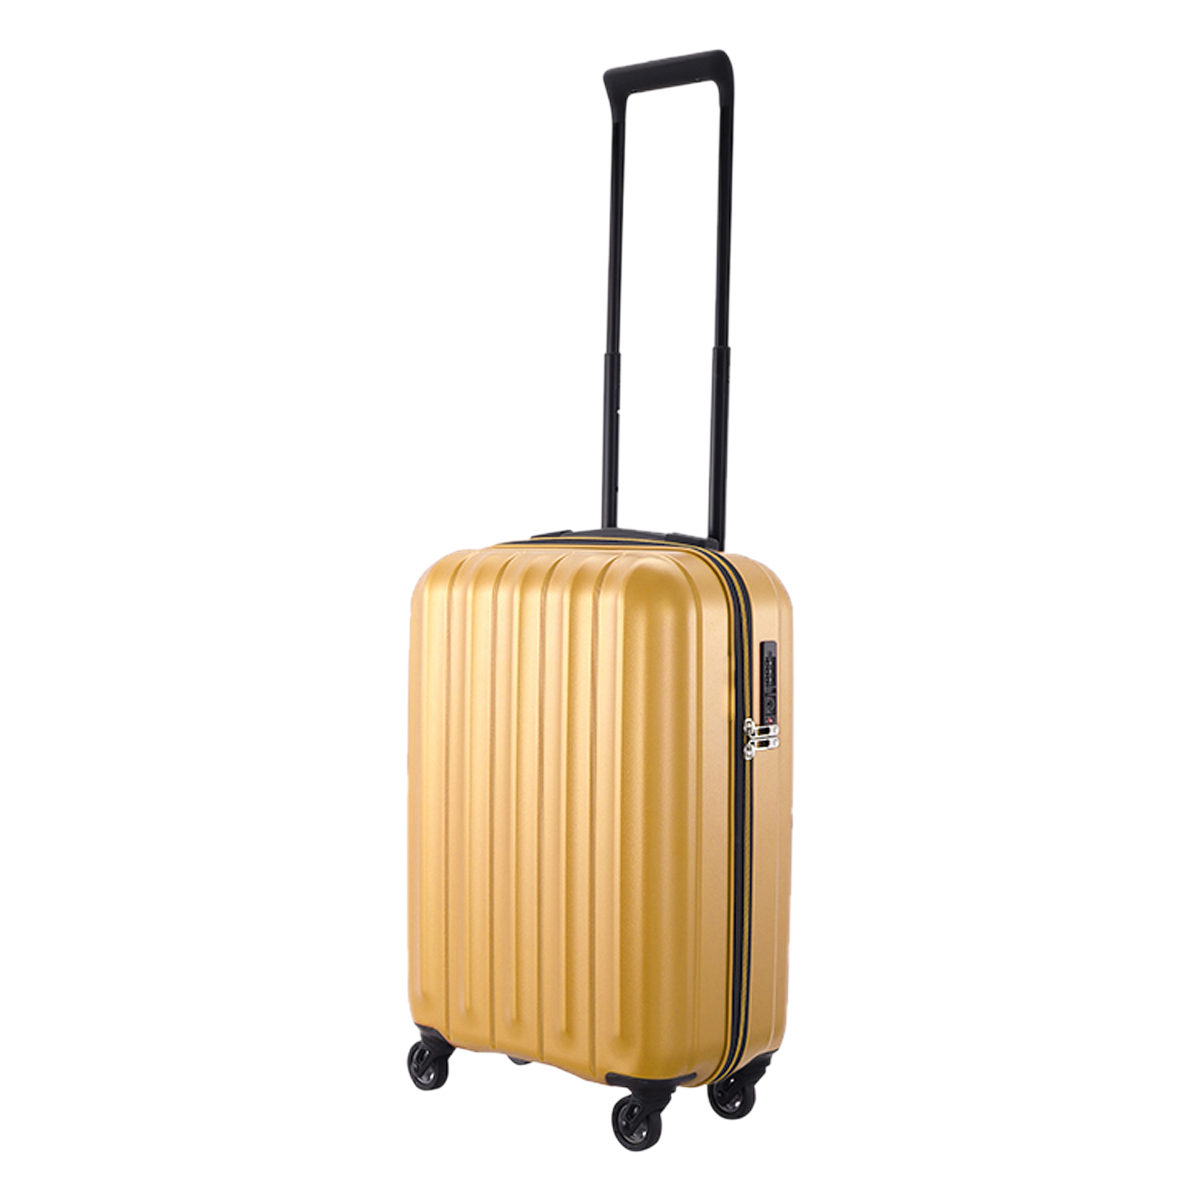 サンコー スーツケース 35L 49cm 1.8kg キャリーケース 機内持ち込み SLZ6-49 極軽 SUNCO TSAロック搭載 ハードキャリー  軽量 抗菌 静音キャスター